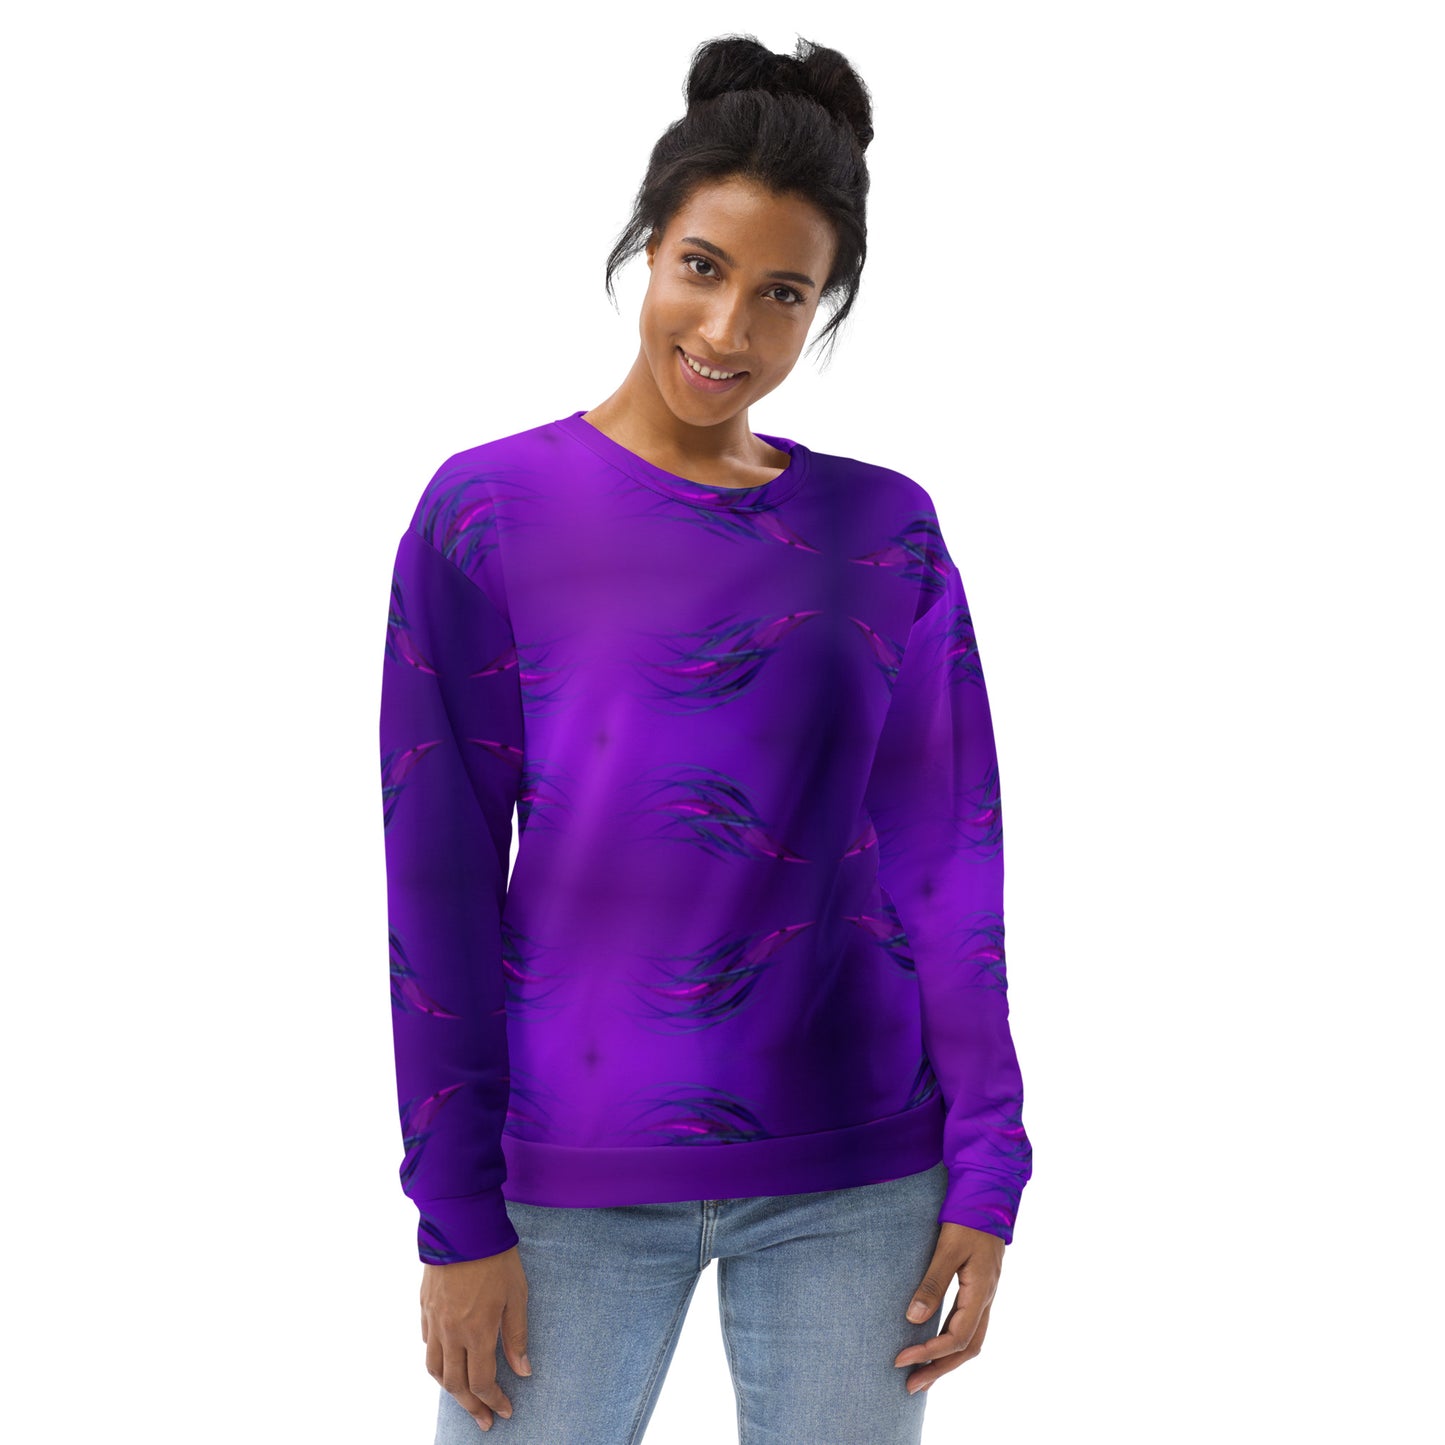 Lovely purple Sweatshirt